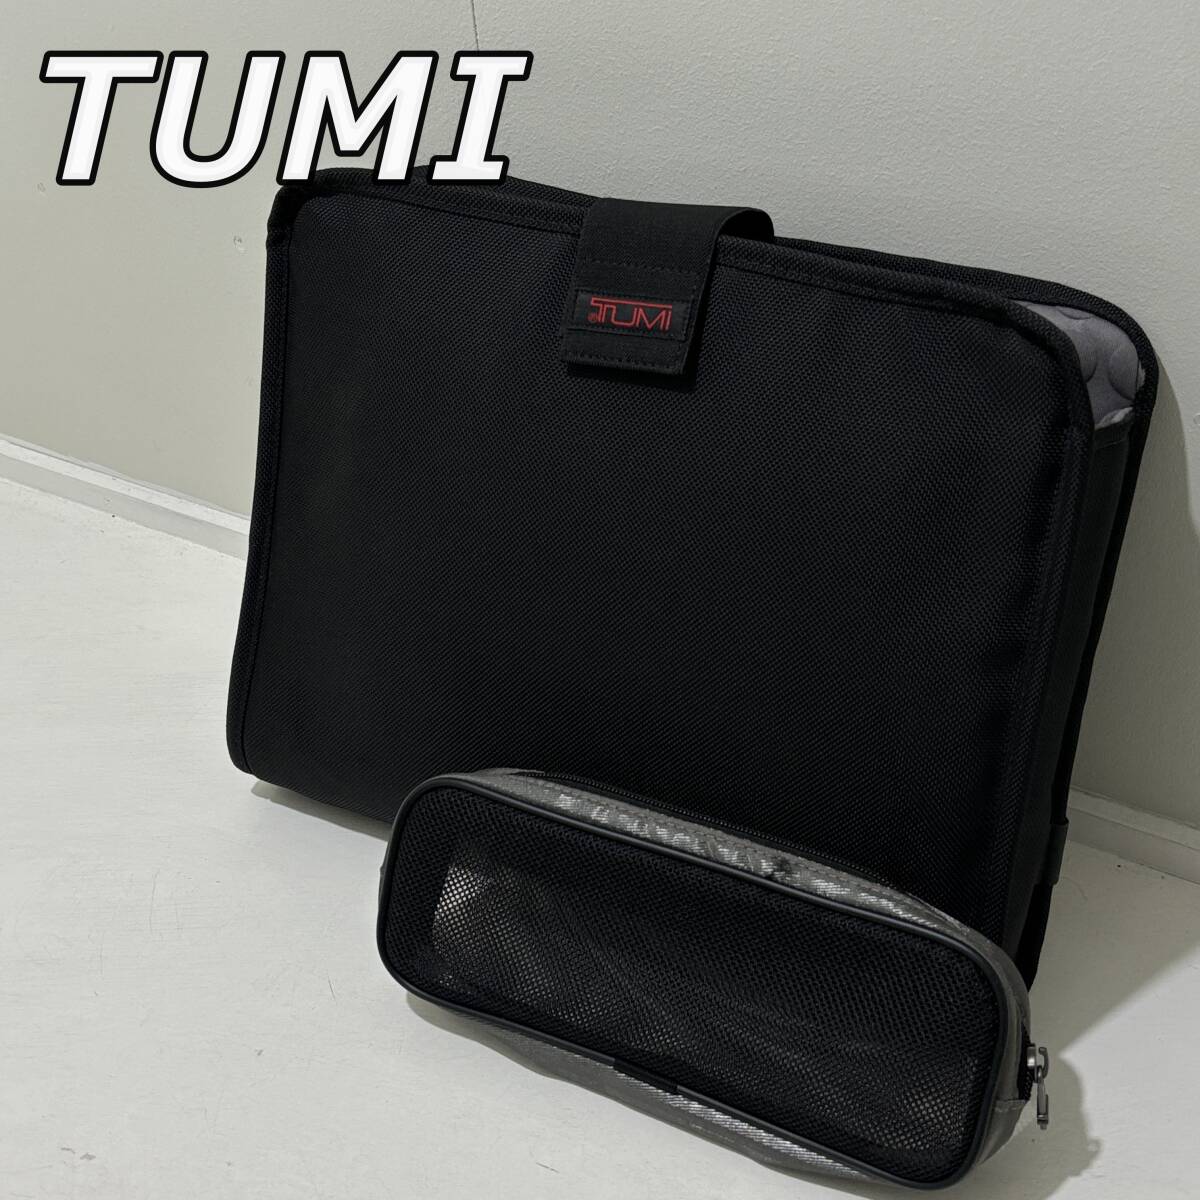 【TUMI】トゥミ ノートパソコン PCケース コード 小物 収納ポーチ付き ビジネス バッグ 黒 ブラック